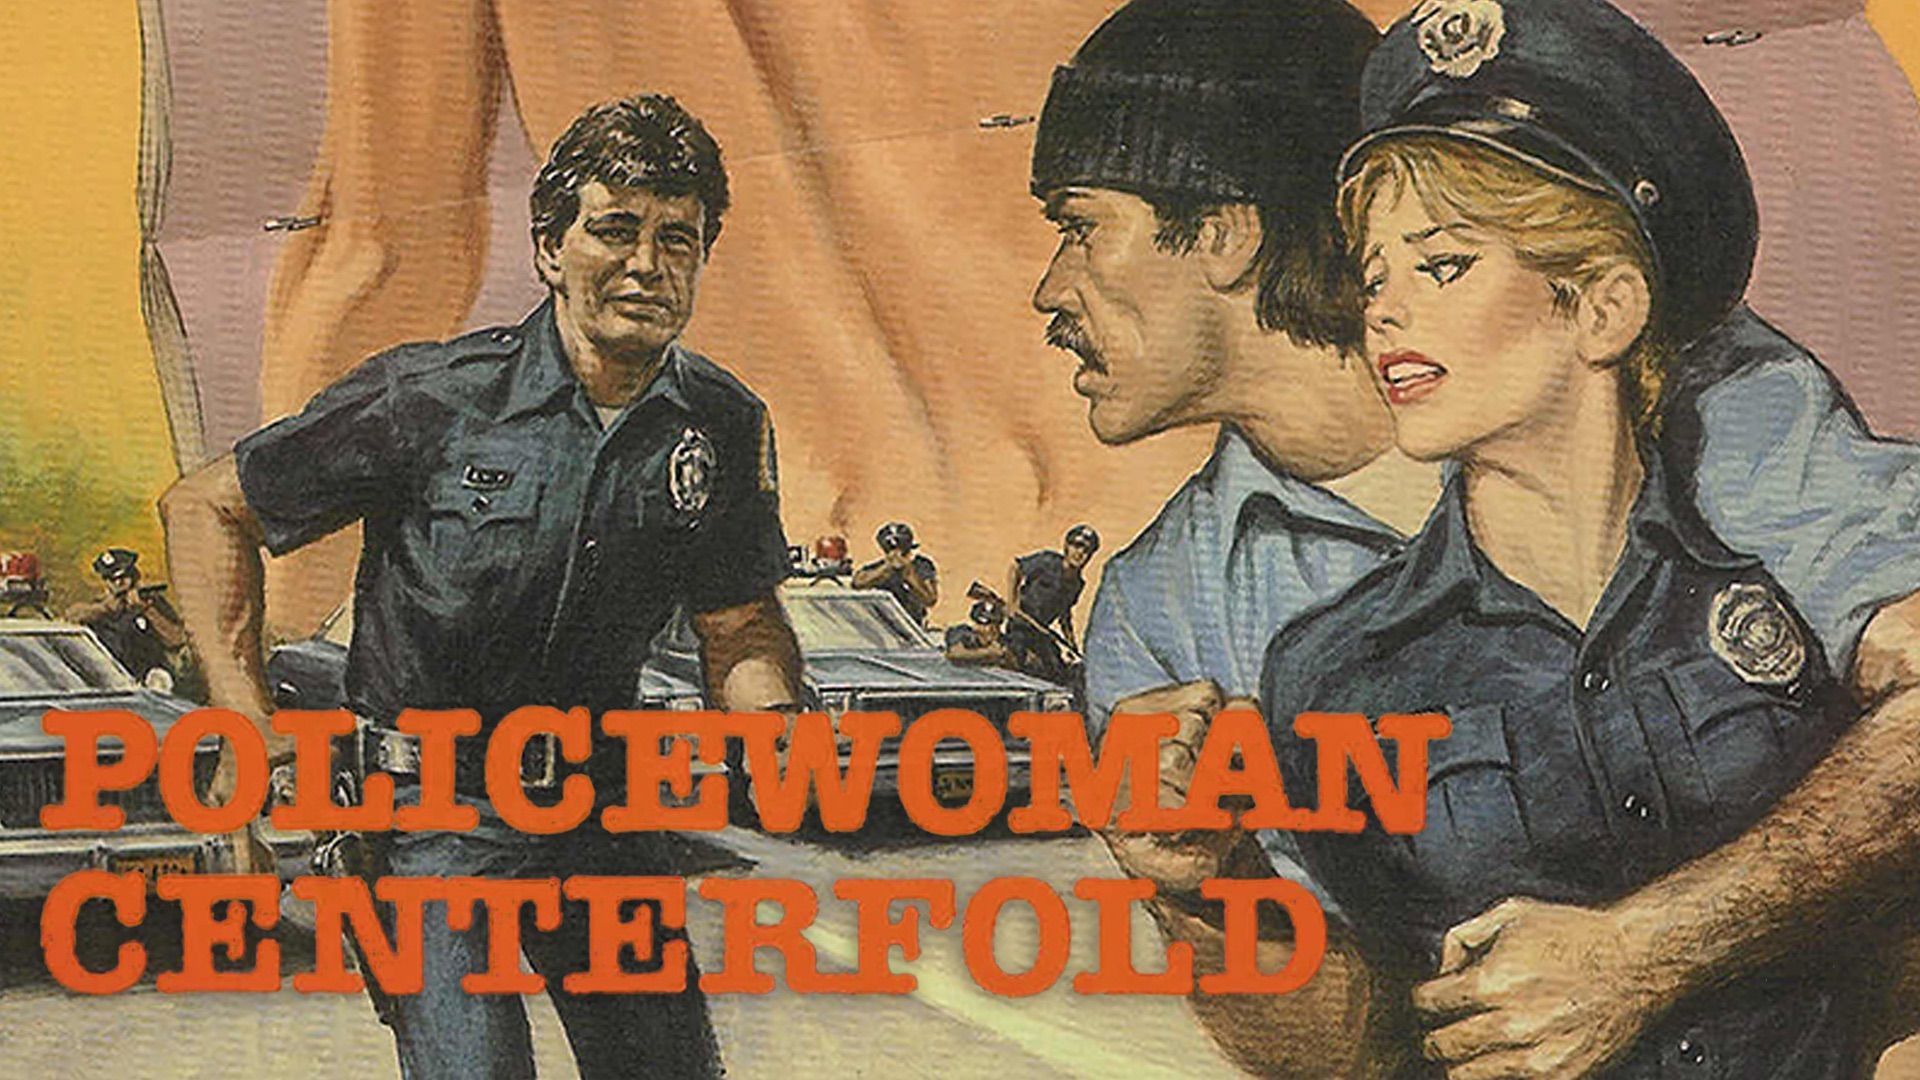 Policewoman Centerfold Backdrop